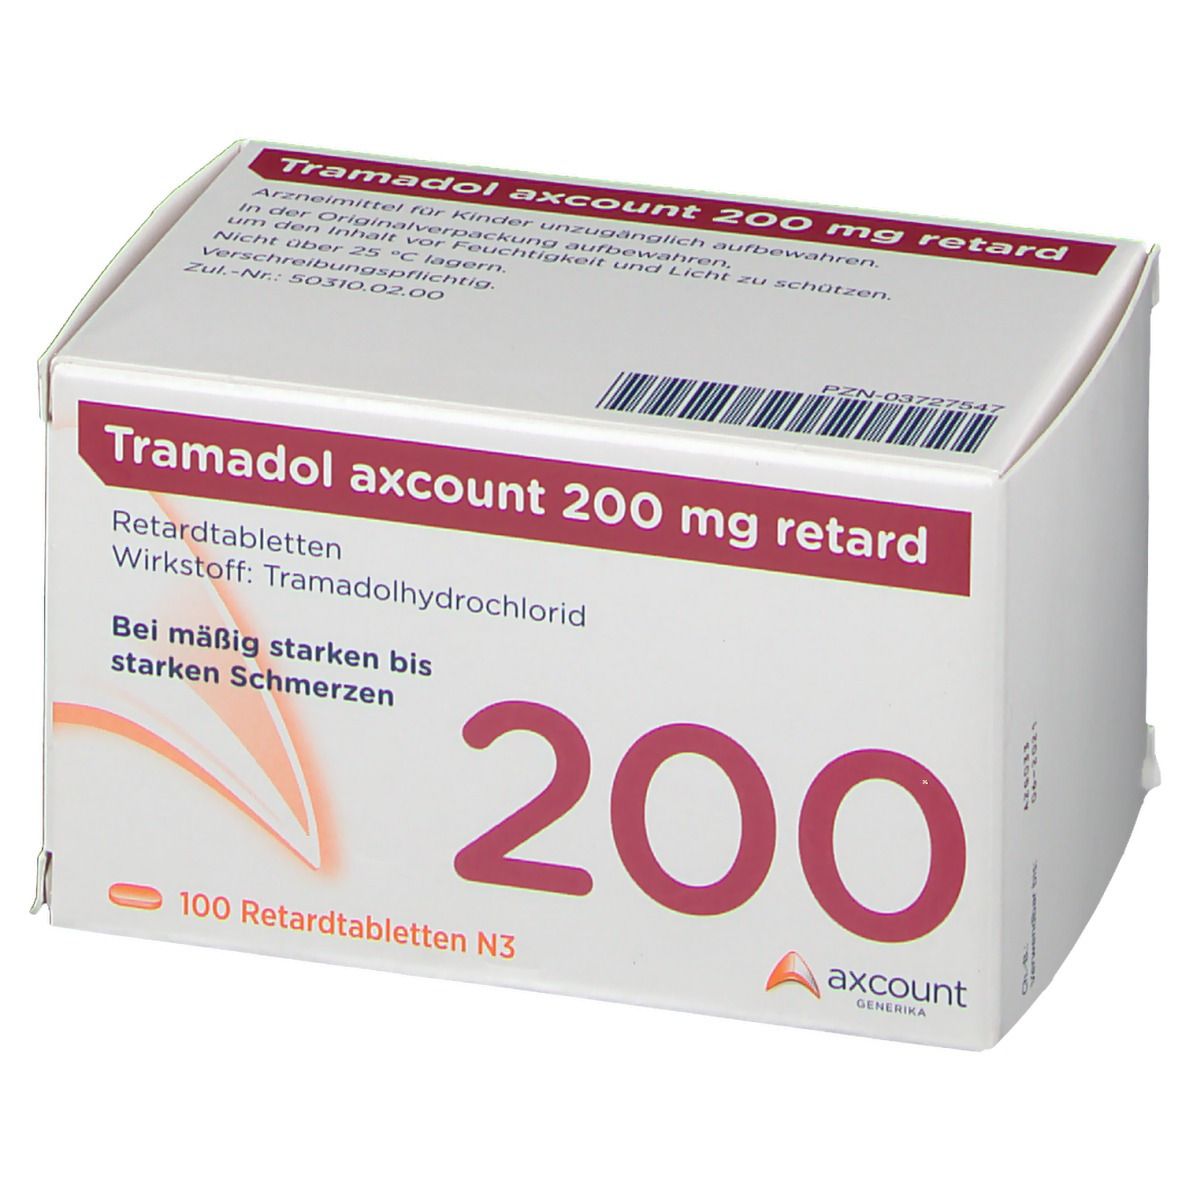 Tramadol axcount 200 mg retard